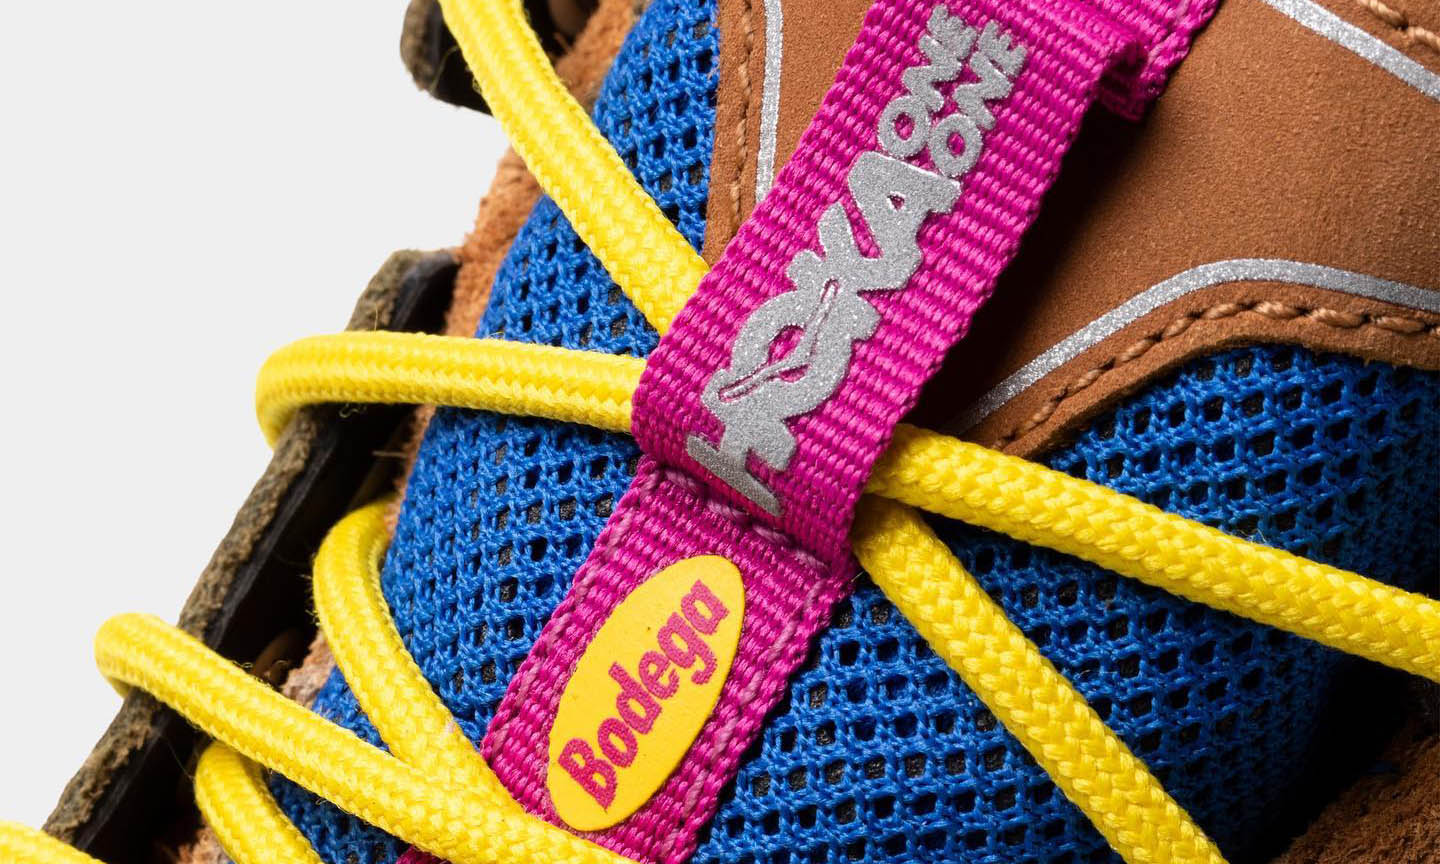 Bodega x HOKA ONE ONE 联名鞋款预告释出